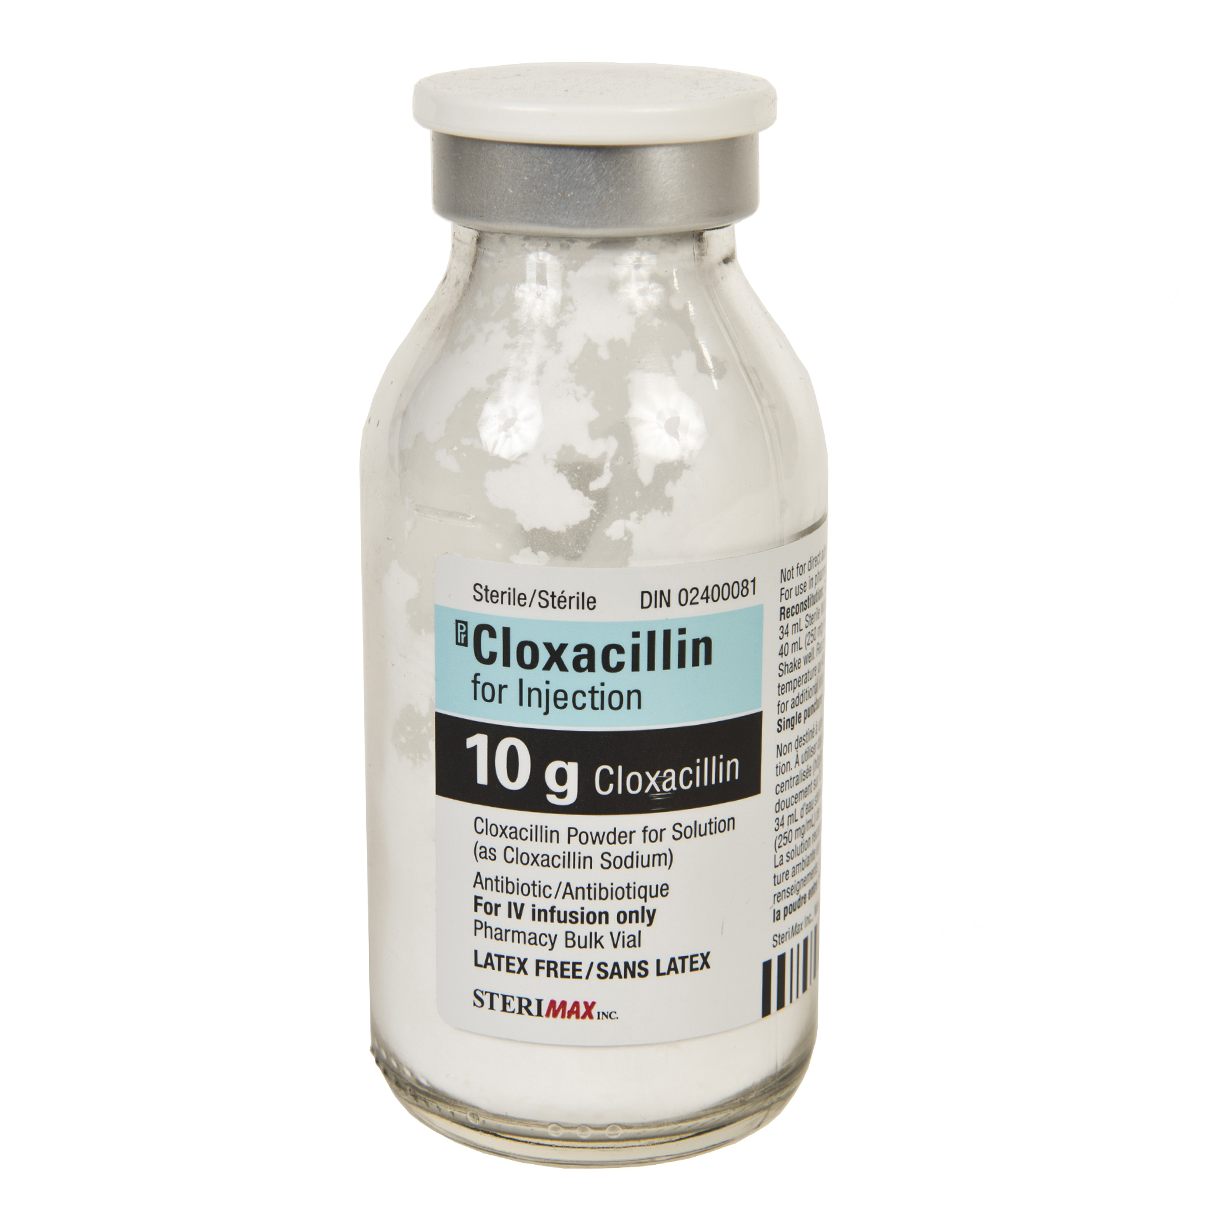 cloxacillin-for-injection-10g